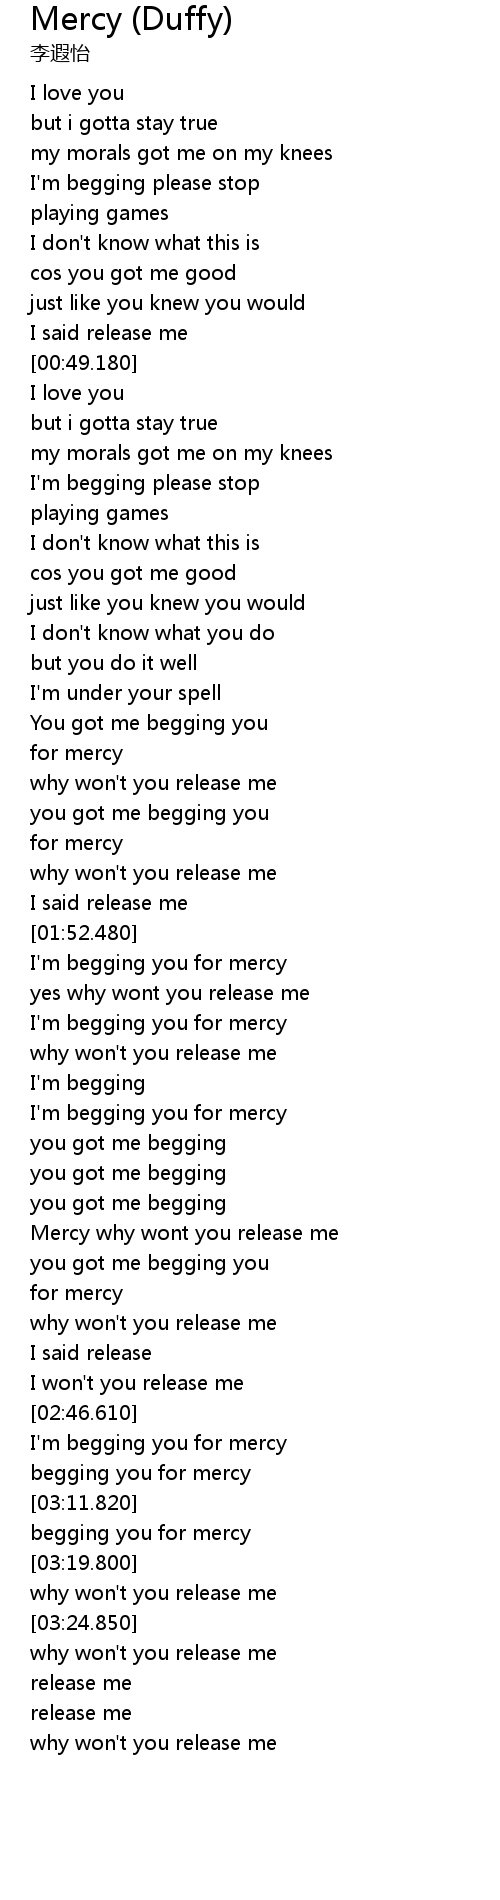 død Kvinde rapport Mercy (Duffy) Lyrics - Follow Lyrics